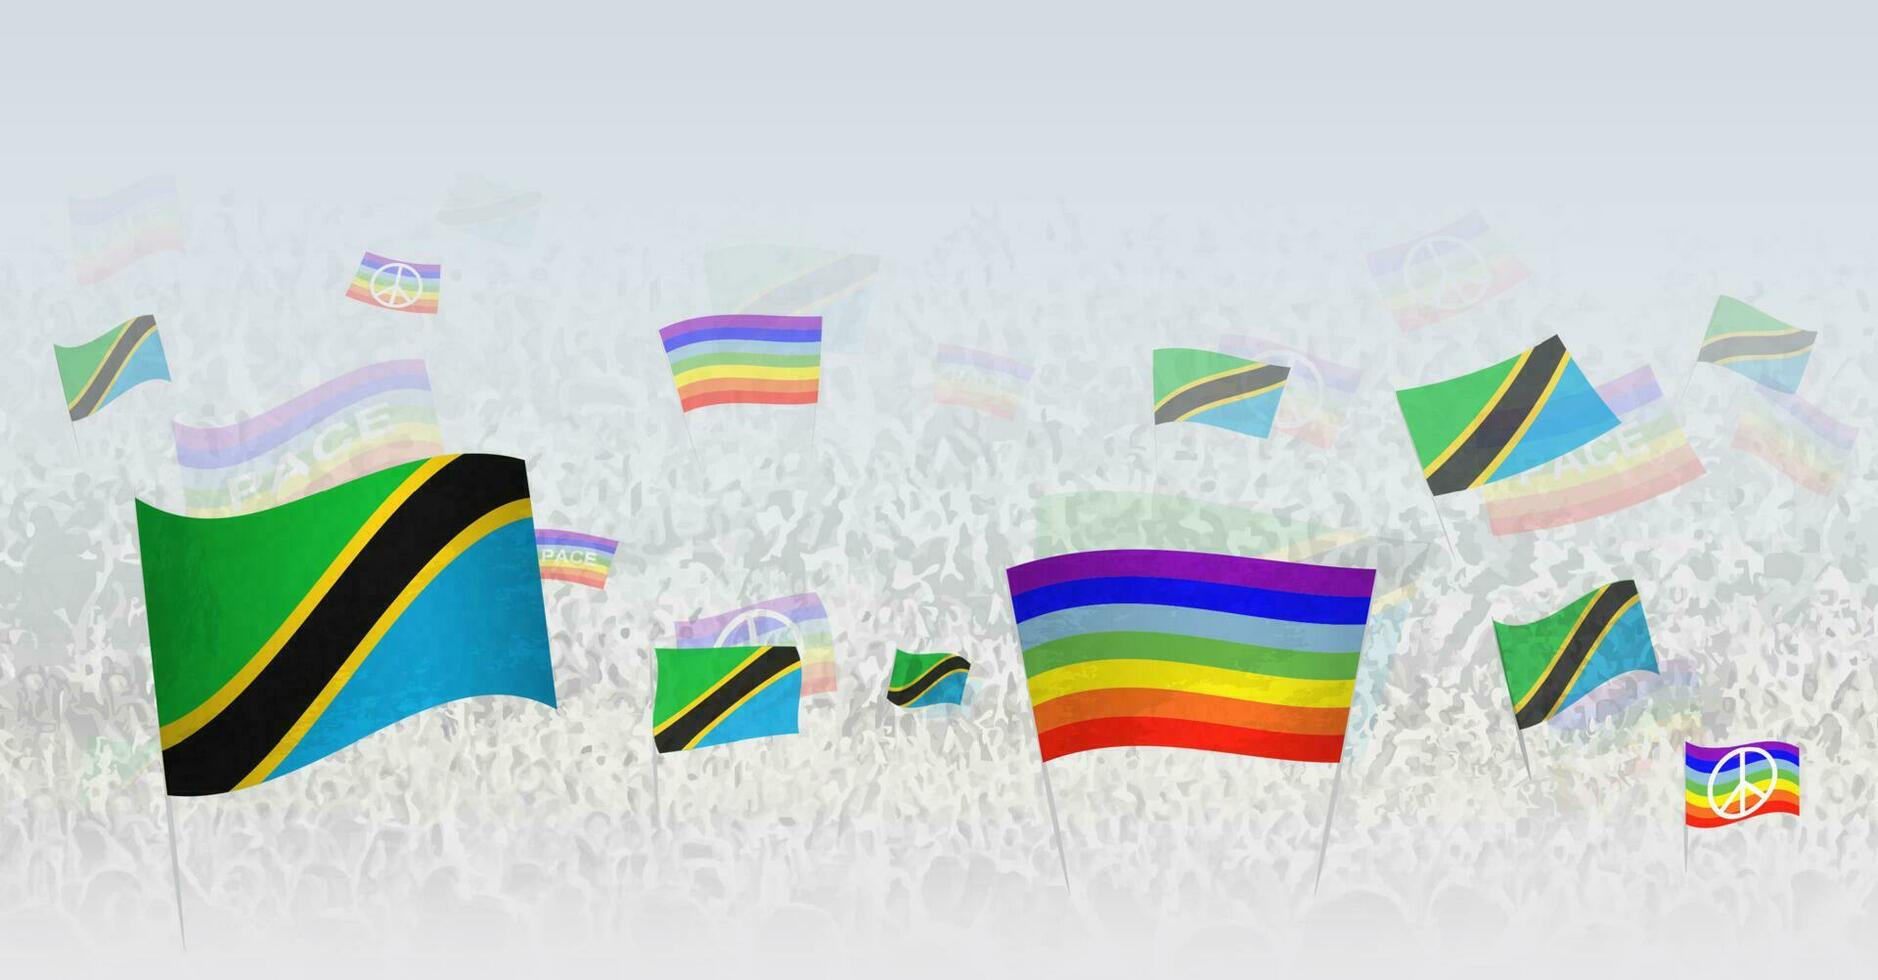 personas ondulación paz banderas y banderas de Tanzania. ilustración de multitud celebrando o protestando con bandera de Tanzania y el paz bandera. vector